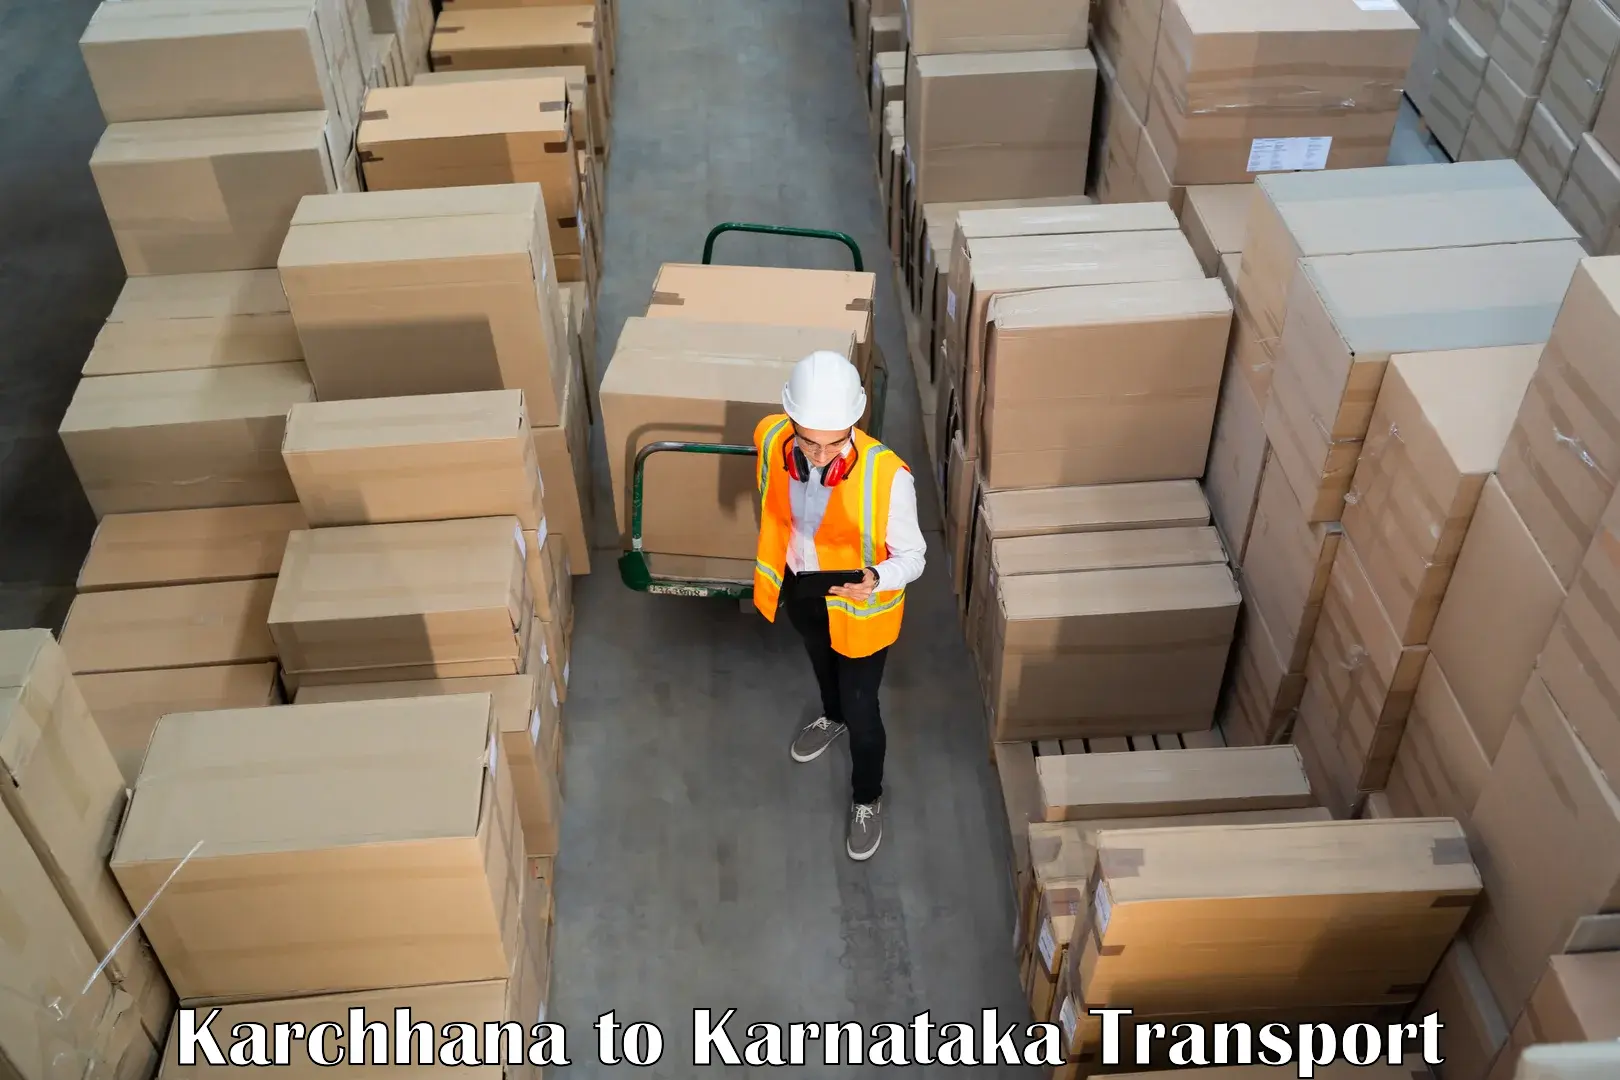 Material transport services in Karchhana to NIT Srinivasanagar